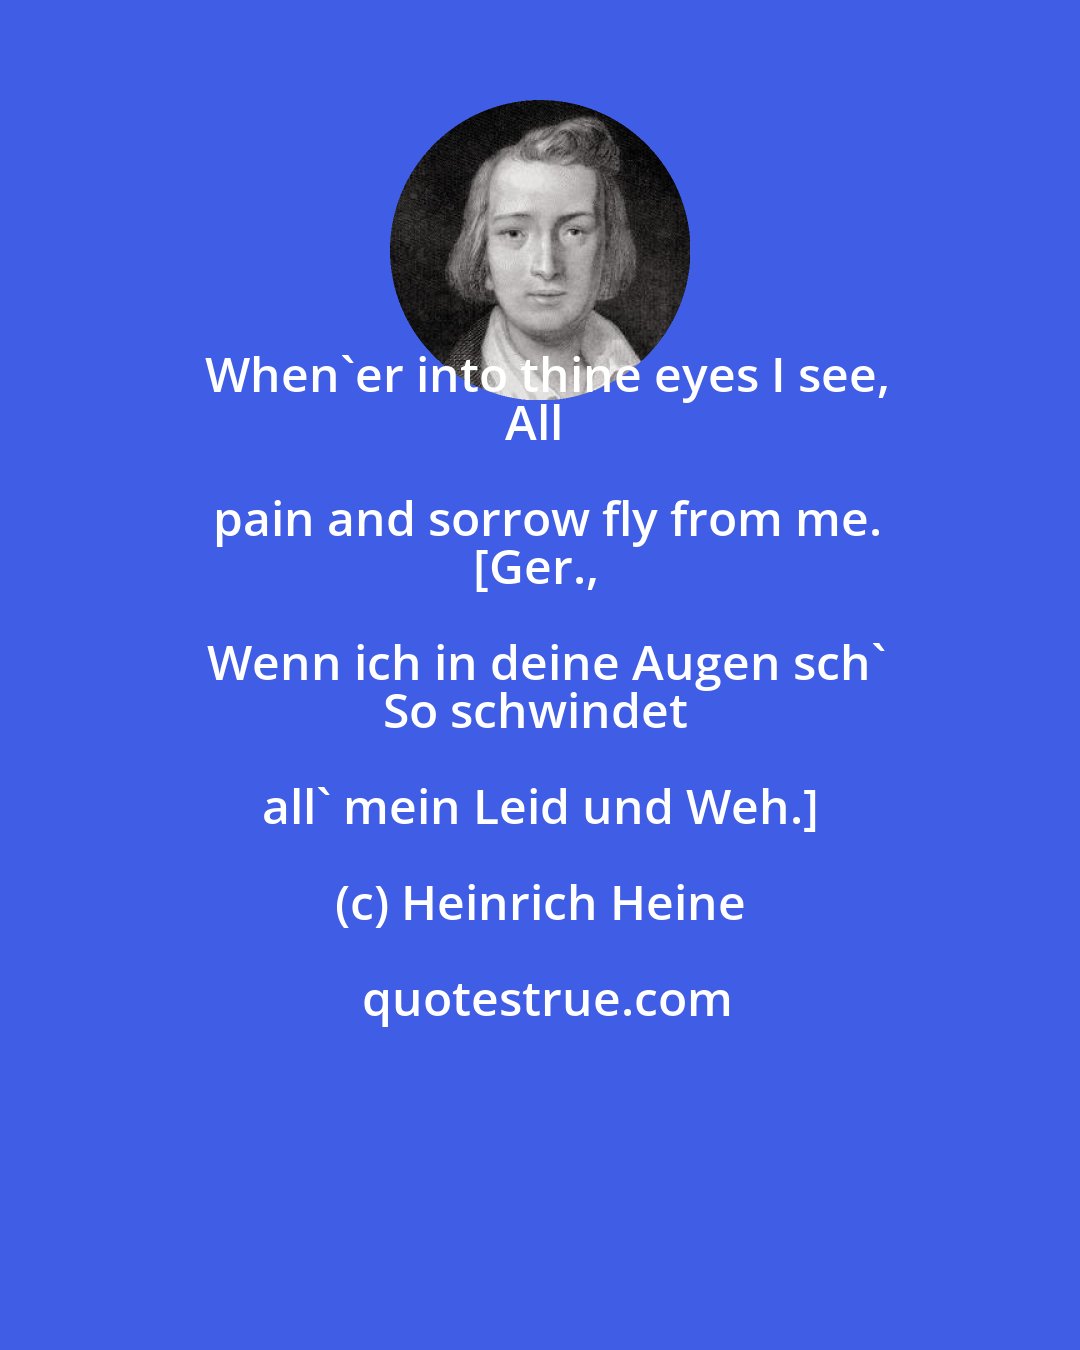 Heinrich Heine: When'er into thine eyes I see,
All pain and sorrow fly from me.
[Ger., Wenn ich in deine Augen sch'
So schwindet all' mein Leid und Weh.]